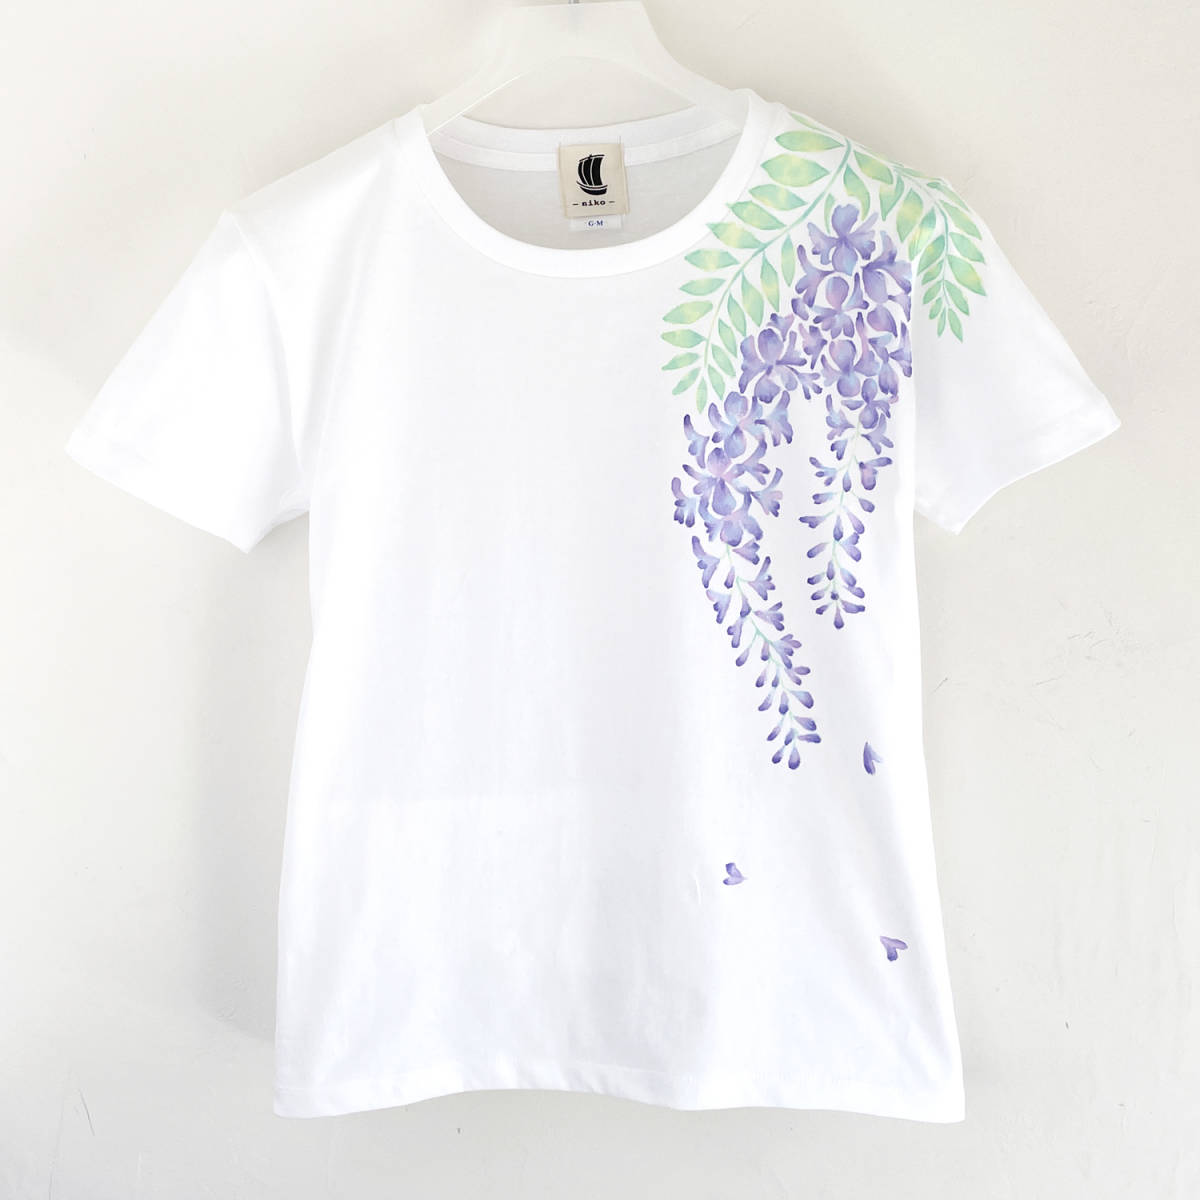 여성 T 셔츠 M 사이즈 흰색 등나무 꽃 무늬 T 셔츠 핸드 메이드 핸드 페인팅 T 셔츠, M 사이즈, 목이 둥글게 파인 옷, 무늬가 있는